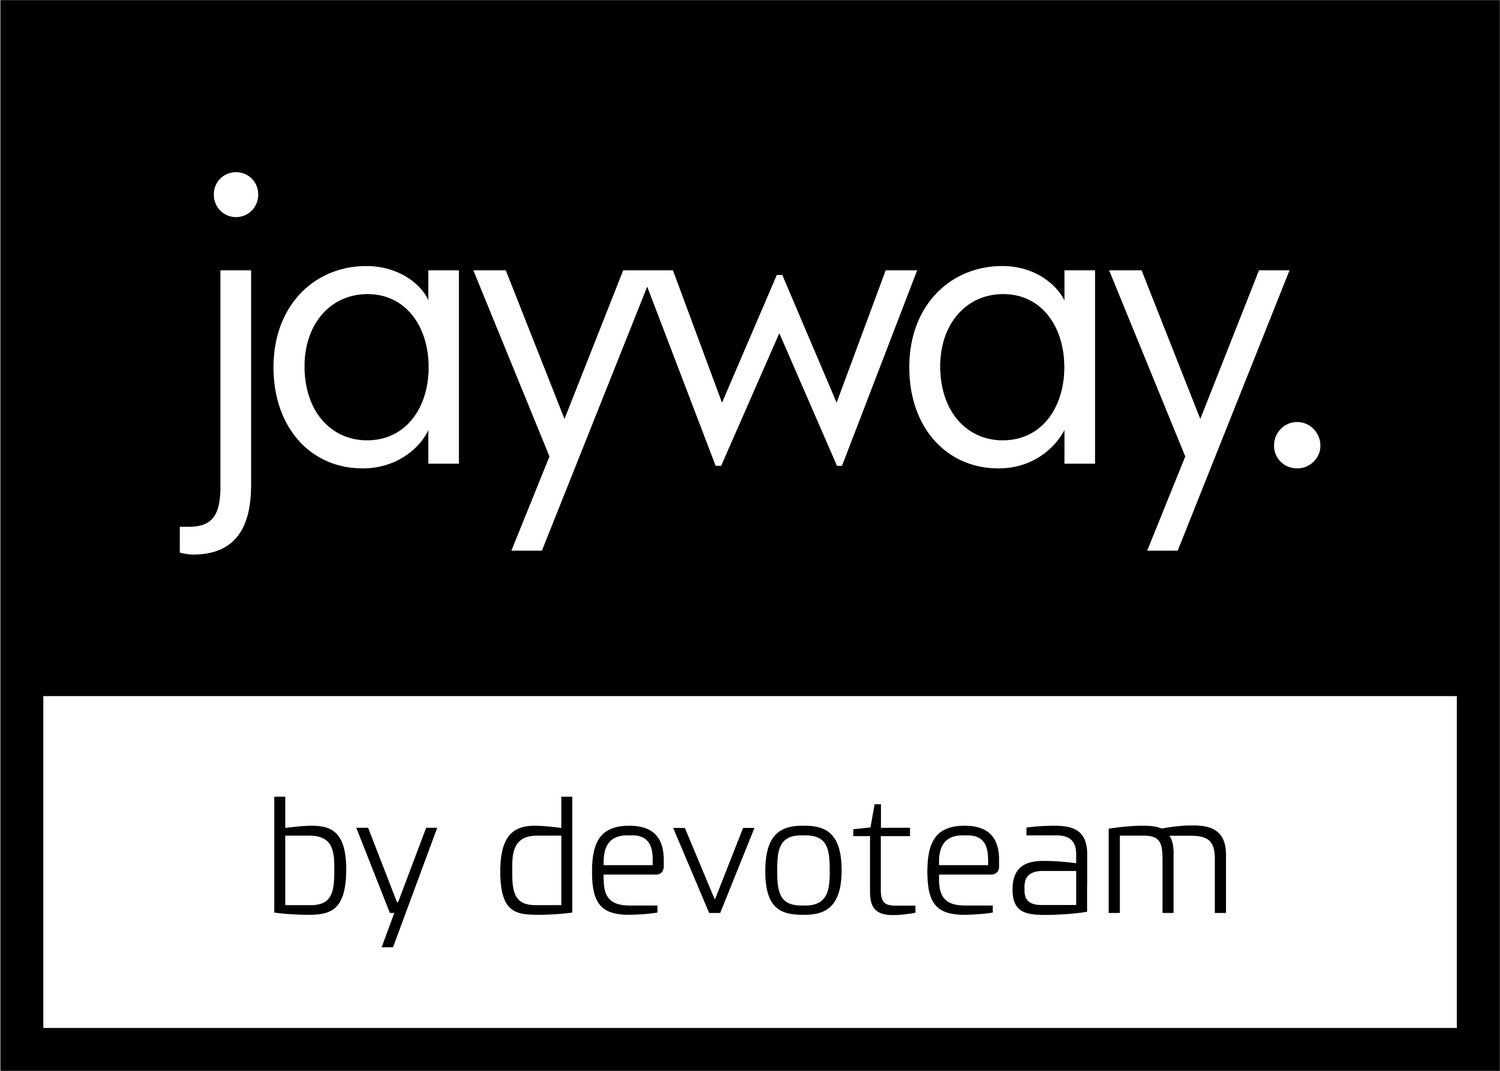 Jayway by Devoteam logo